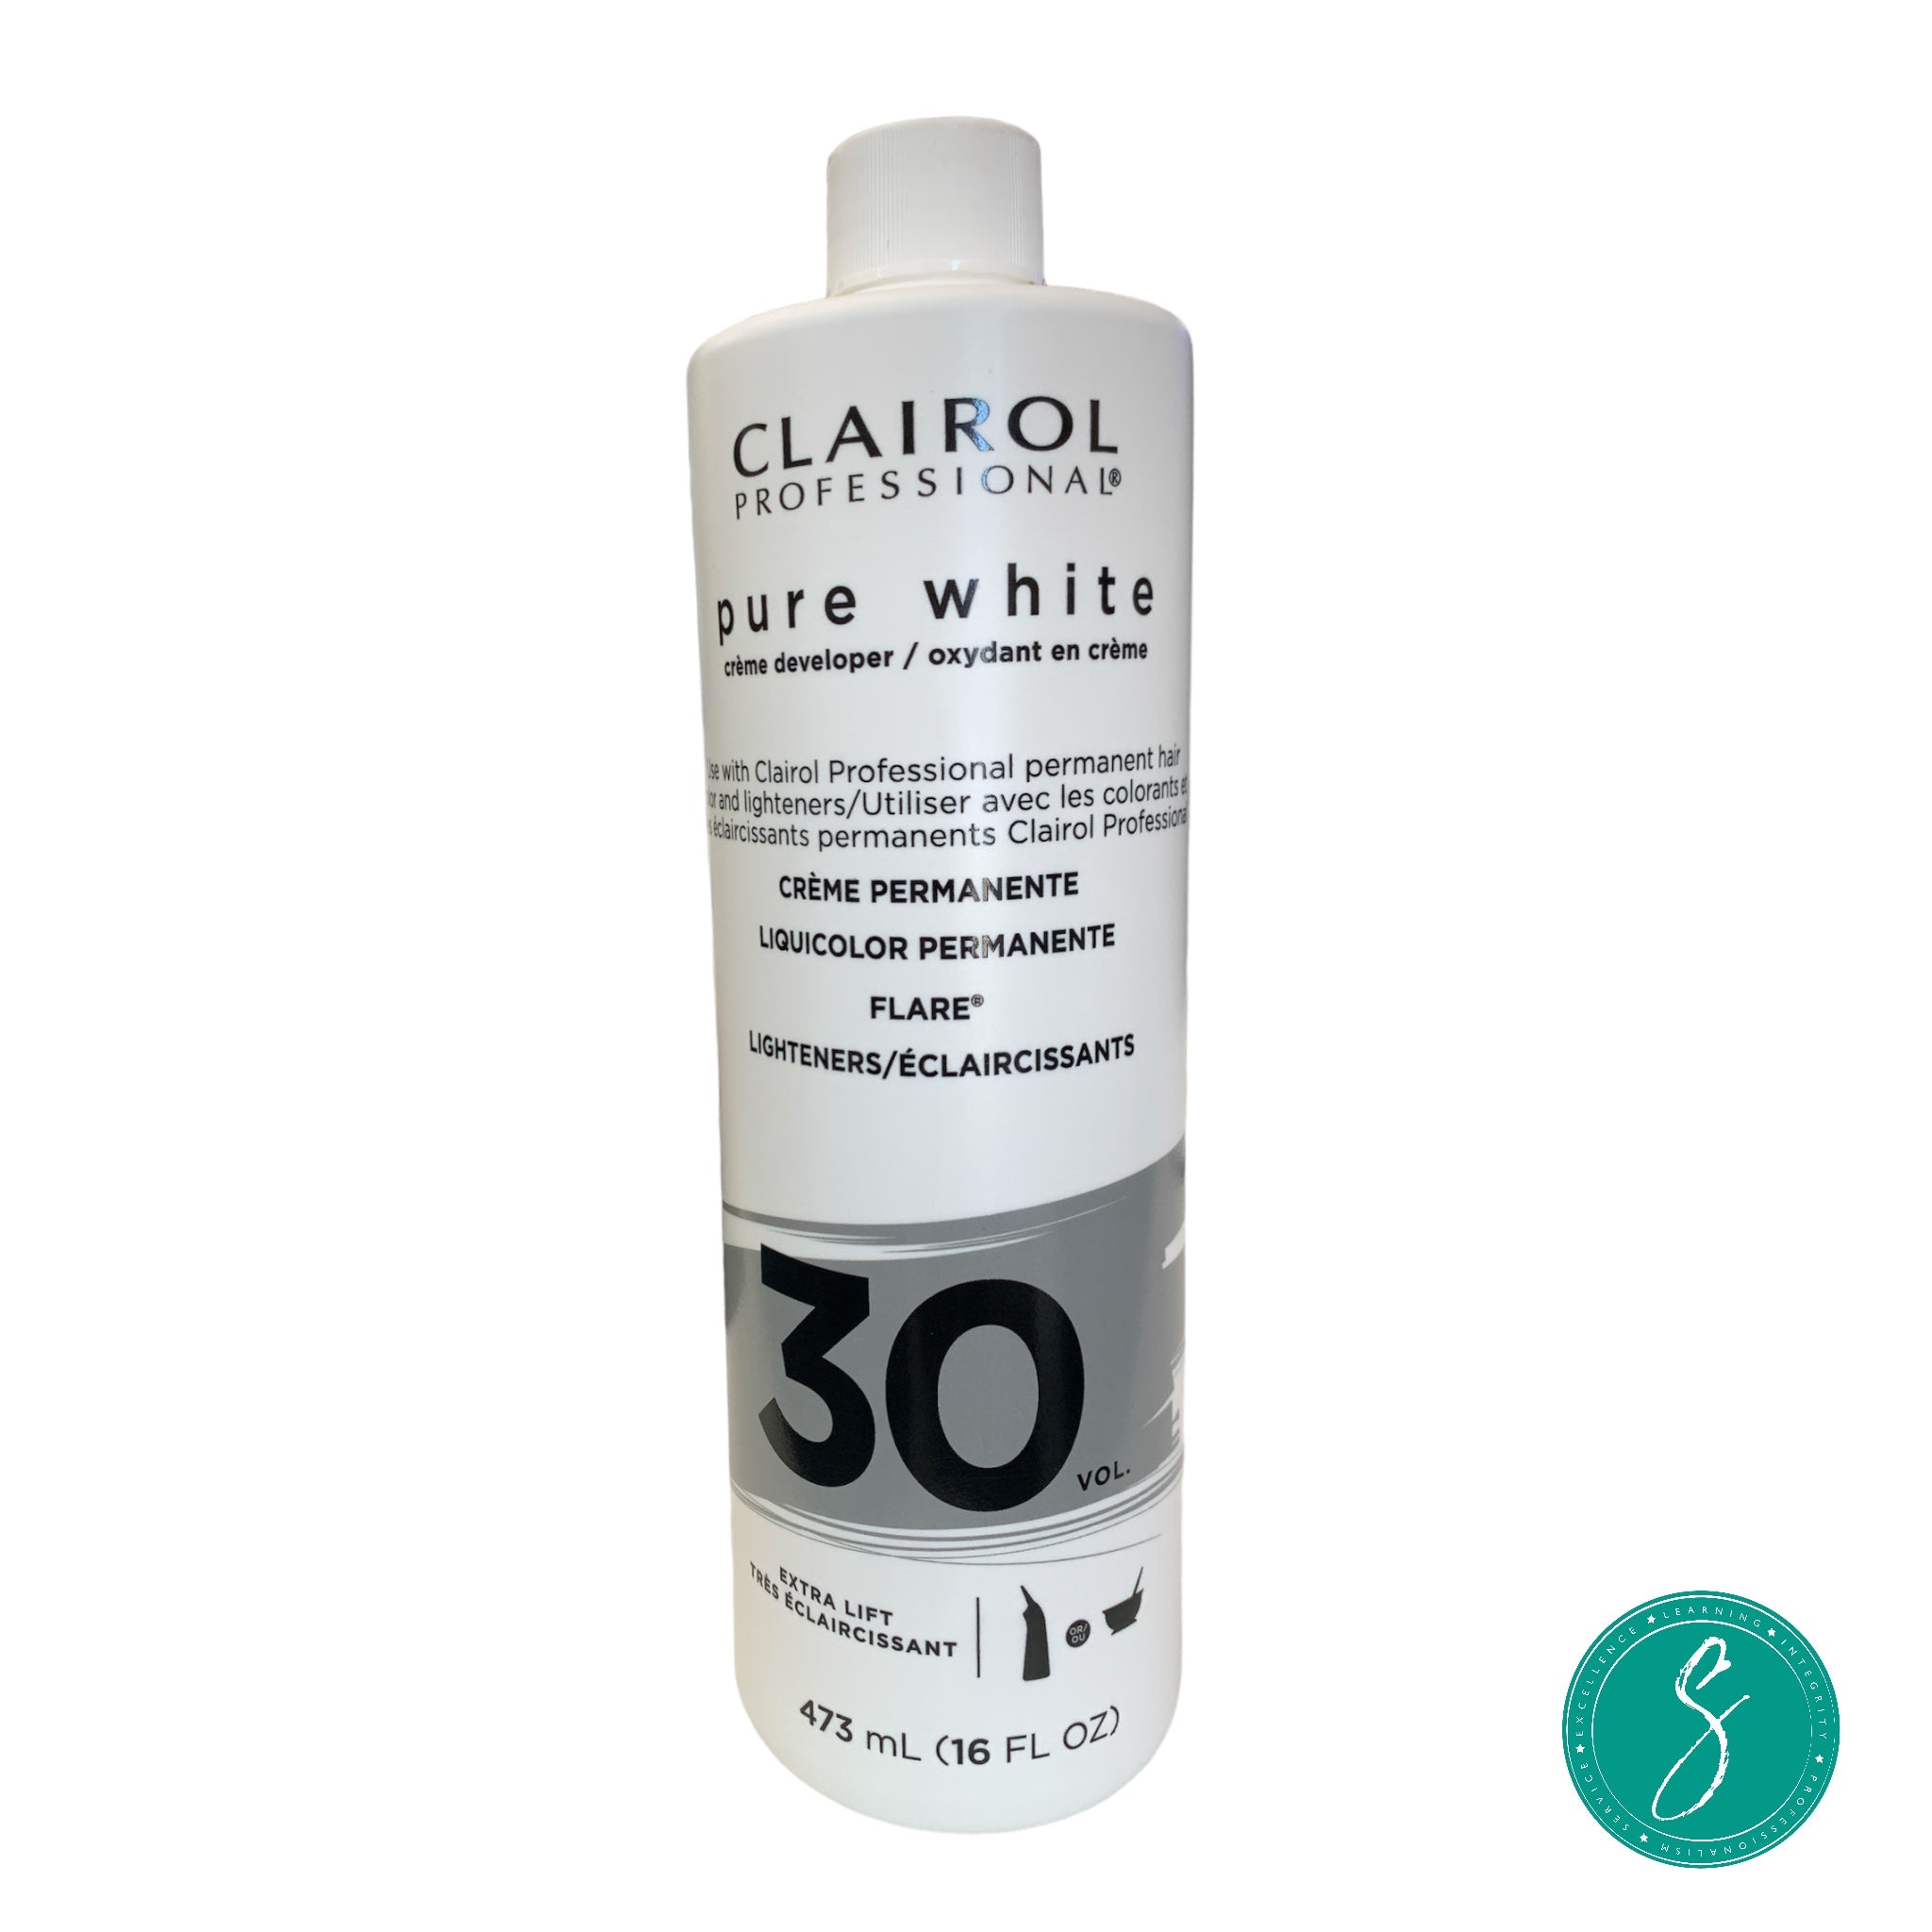 Clairol Professional Pure White 30V Developer